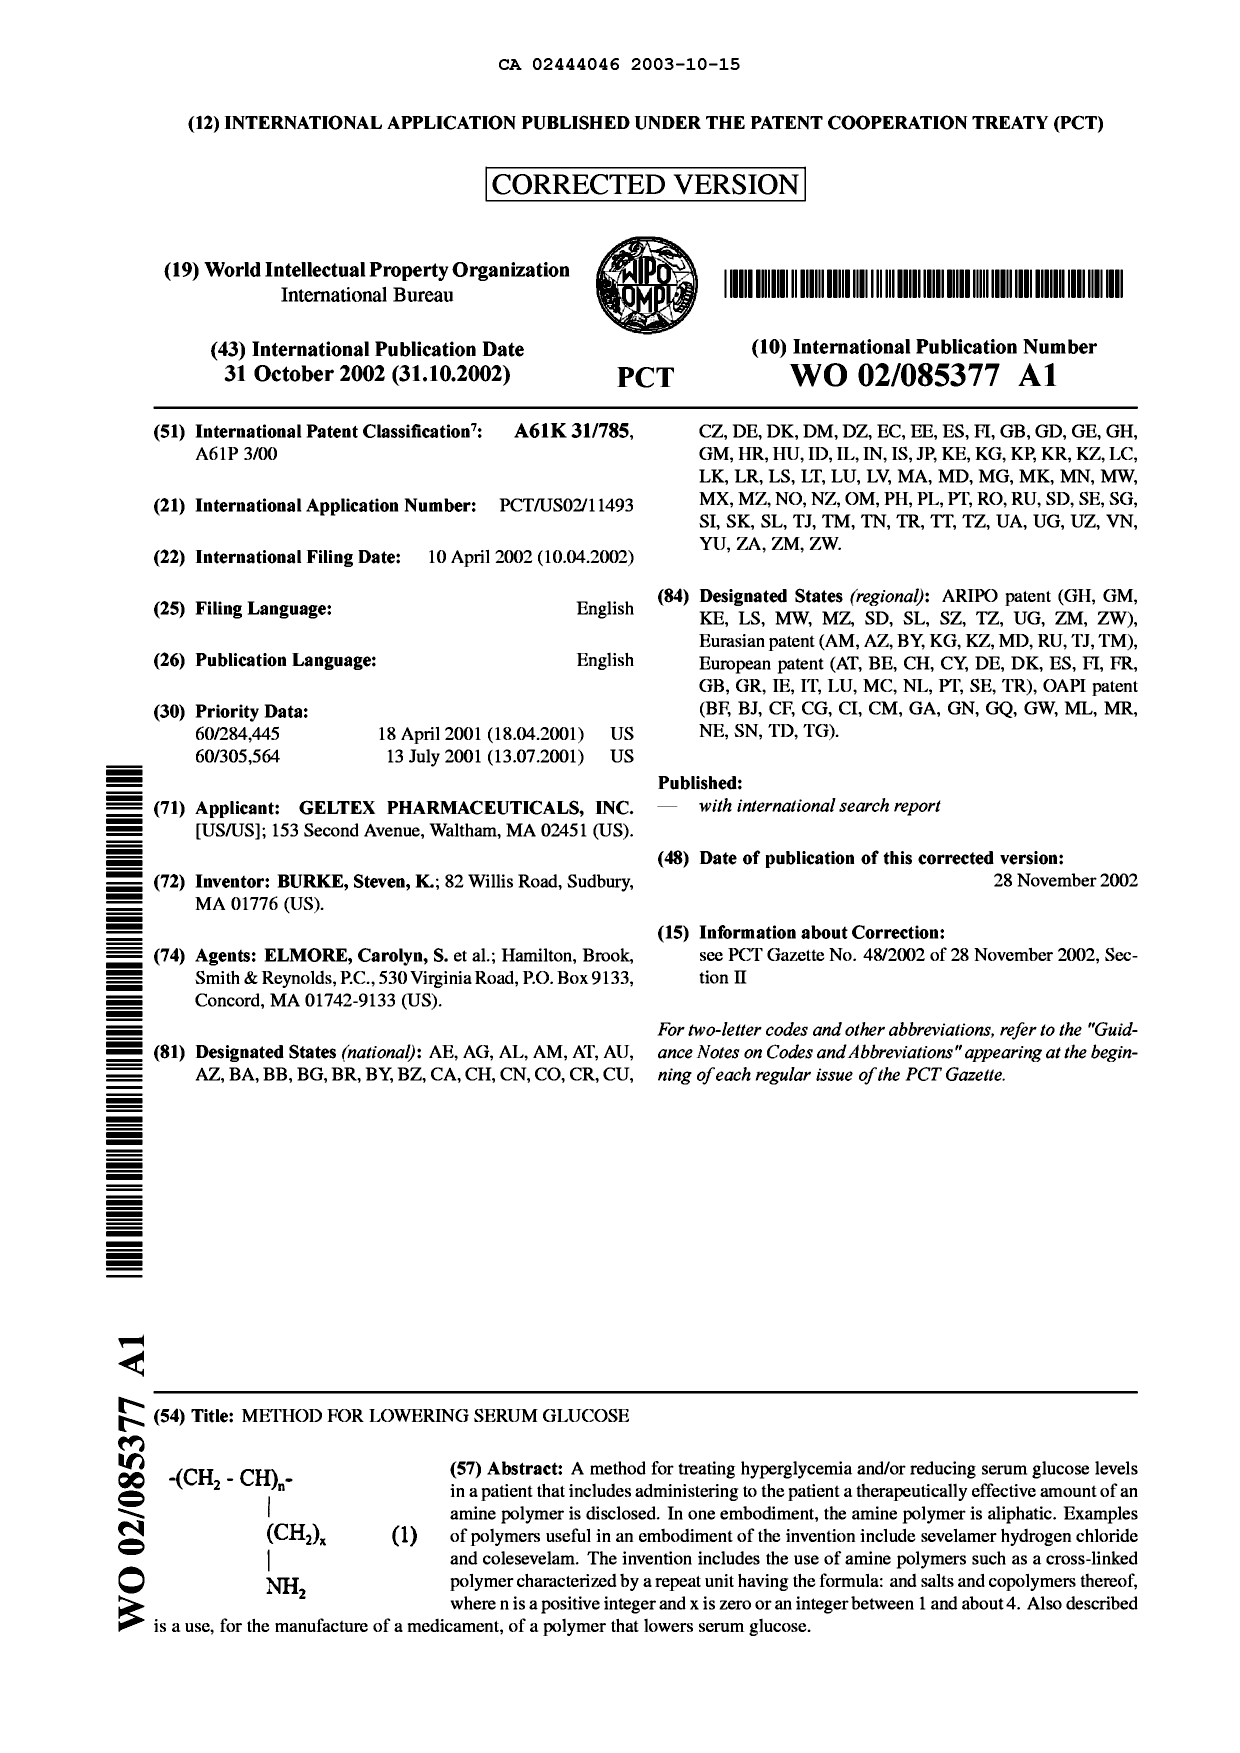 Document de brevet canadien 2444046. Abrégé 20031015. Image 1 de 1